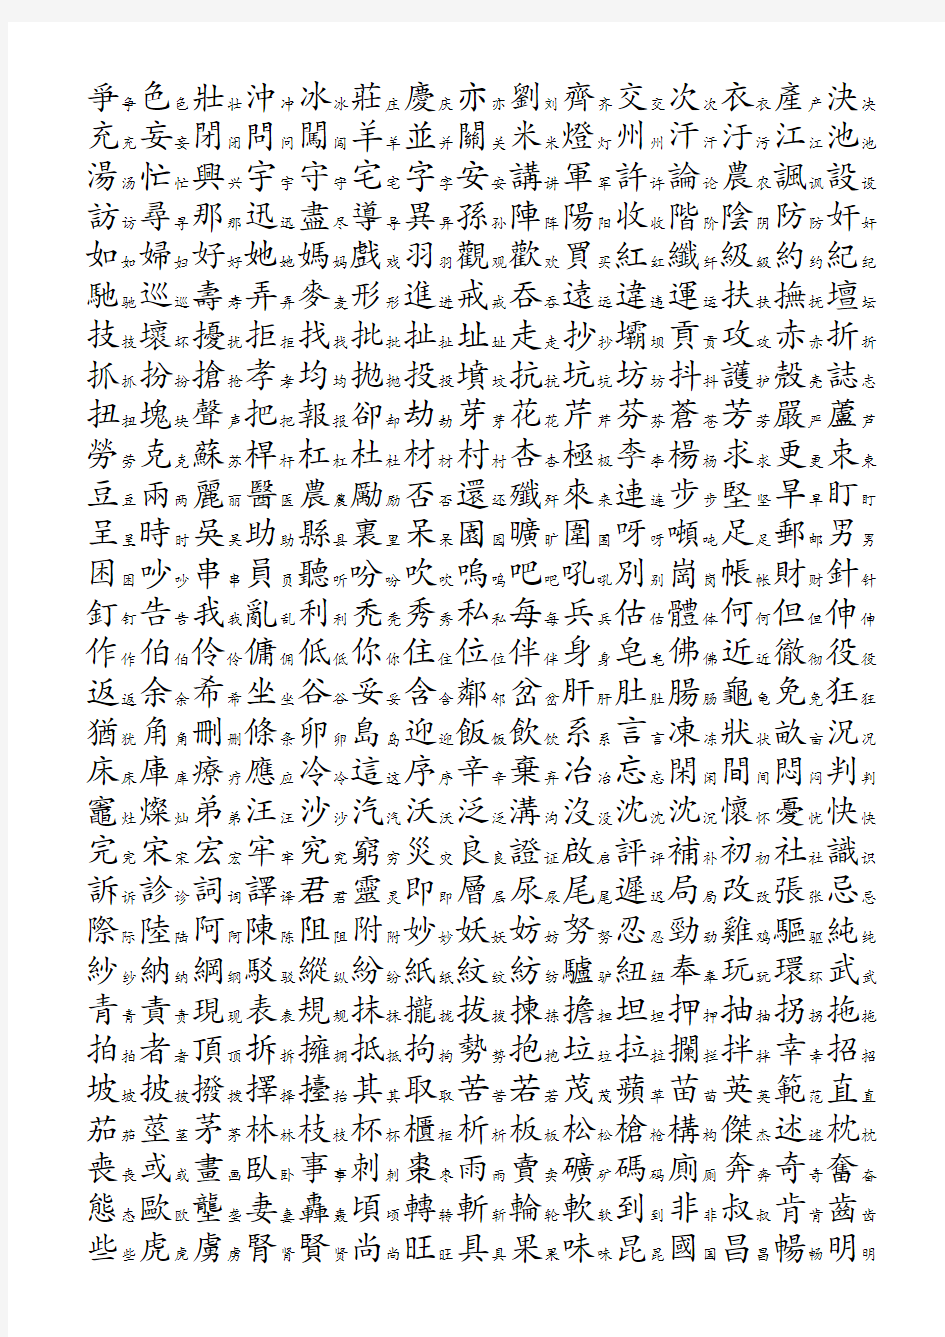 3500个常用汉字简繁对照表-笔画顺序